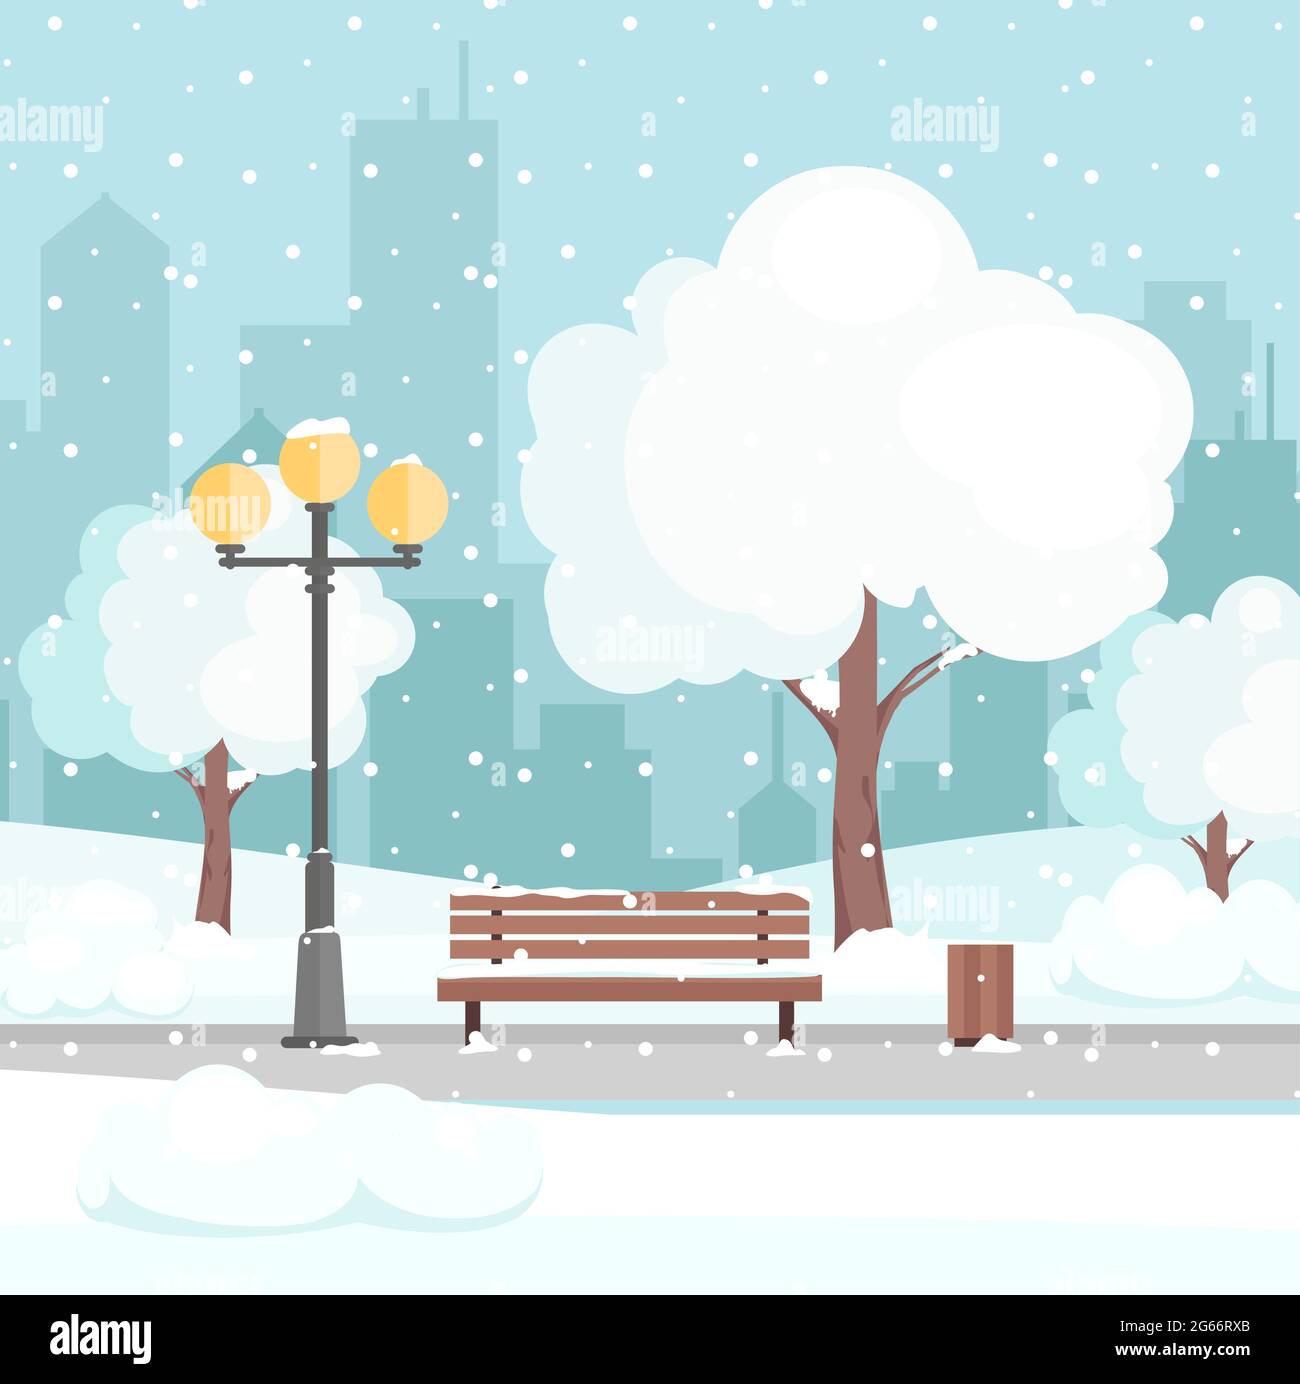 Illustration vectorielle du parc d'hiver de la ville avec neige et fond de ville moderne. Banc dans le parc de la ville d'hiver, concept de vacances d'hiver dans le style de dessin animé plat Illustration de Vecteur